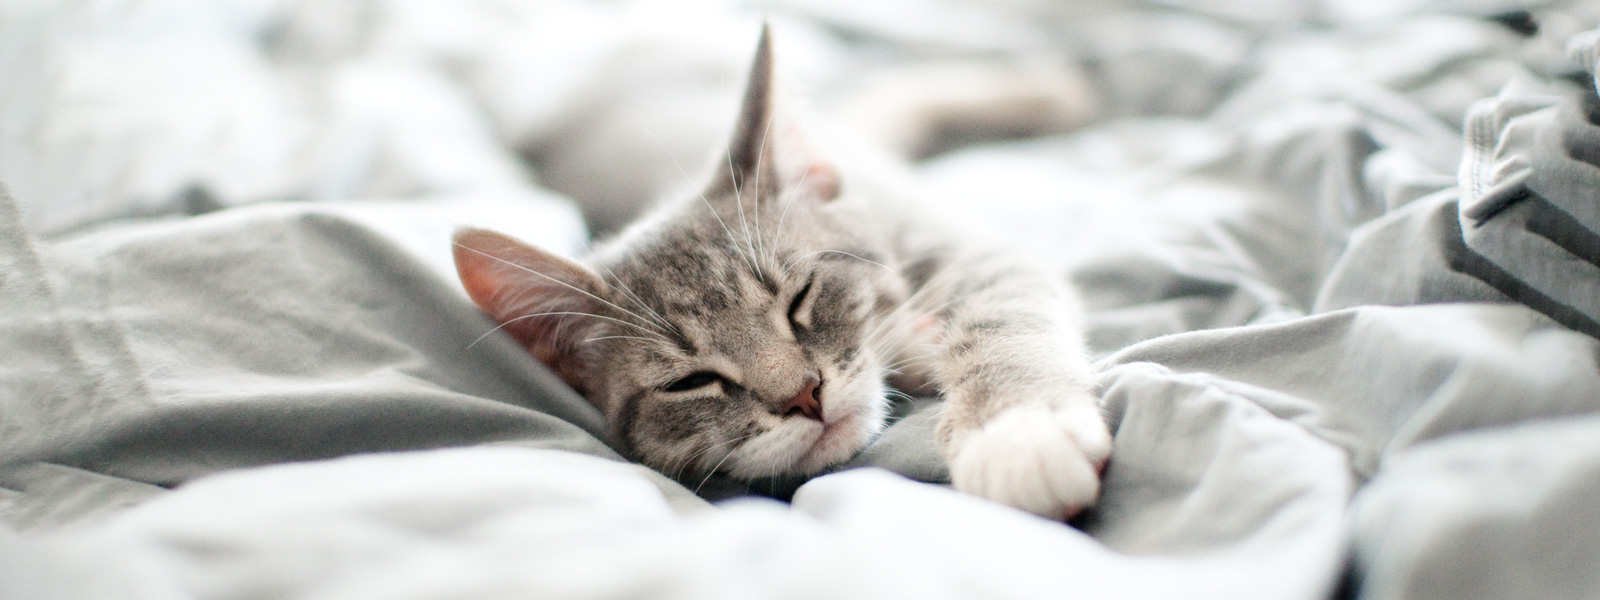 Katze die im Bett auf einer Decke liegt und schläft